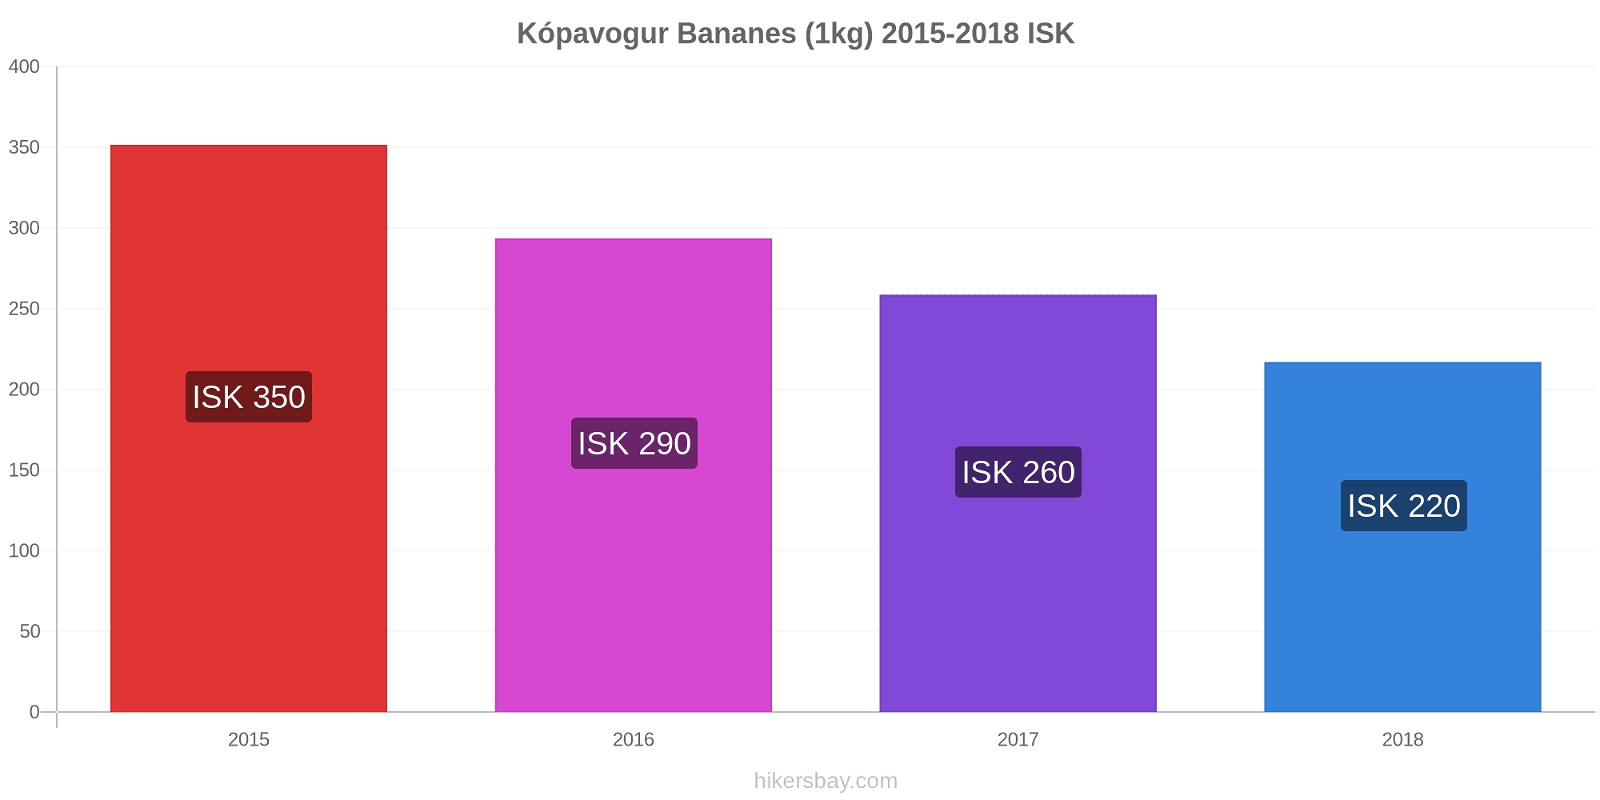 Kópavogur changements de prix Bananes (1kg) hikersbay.com